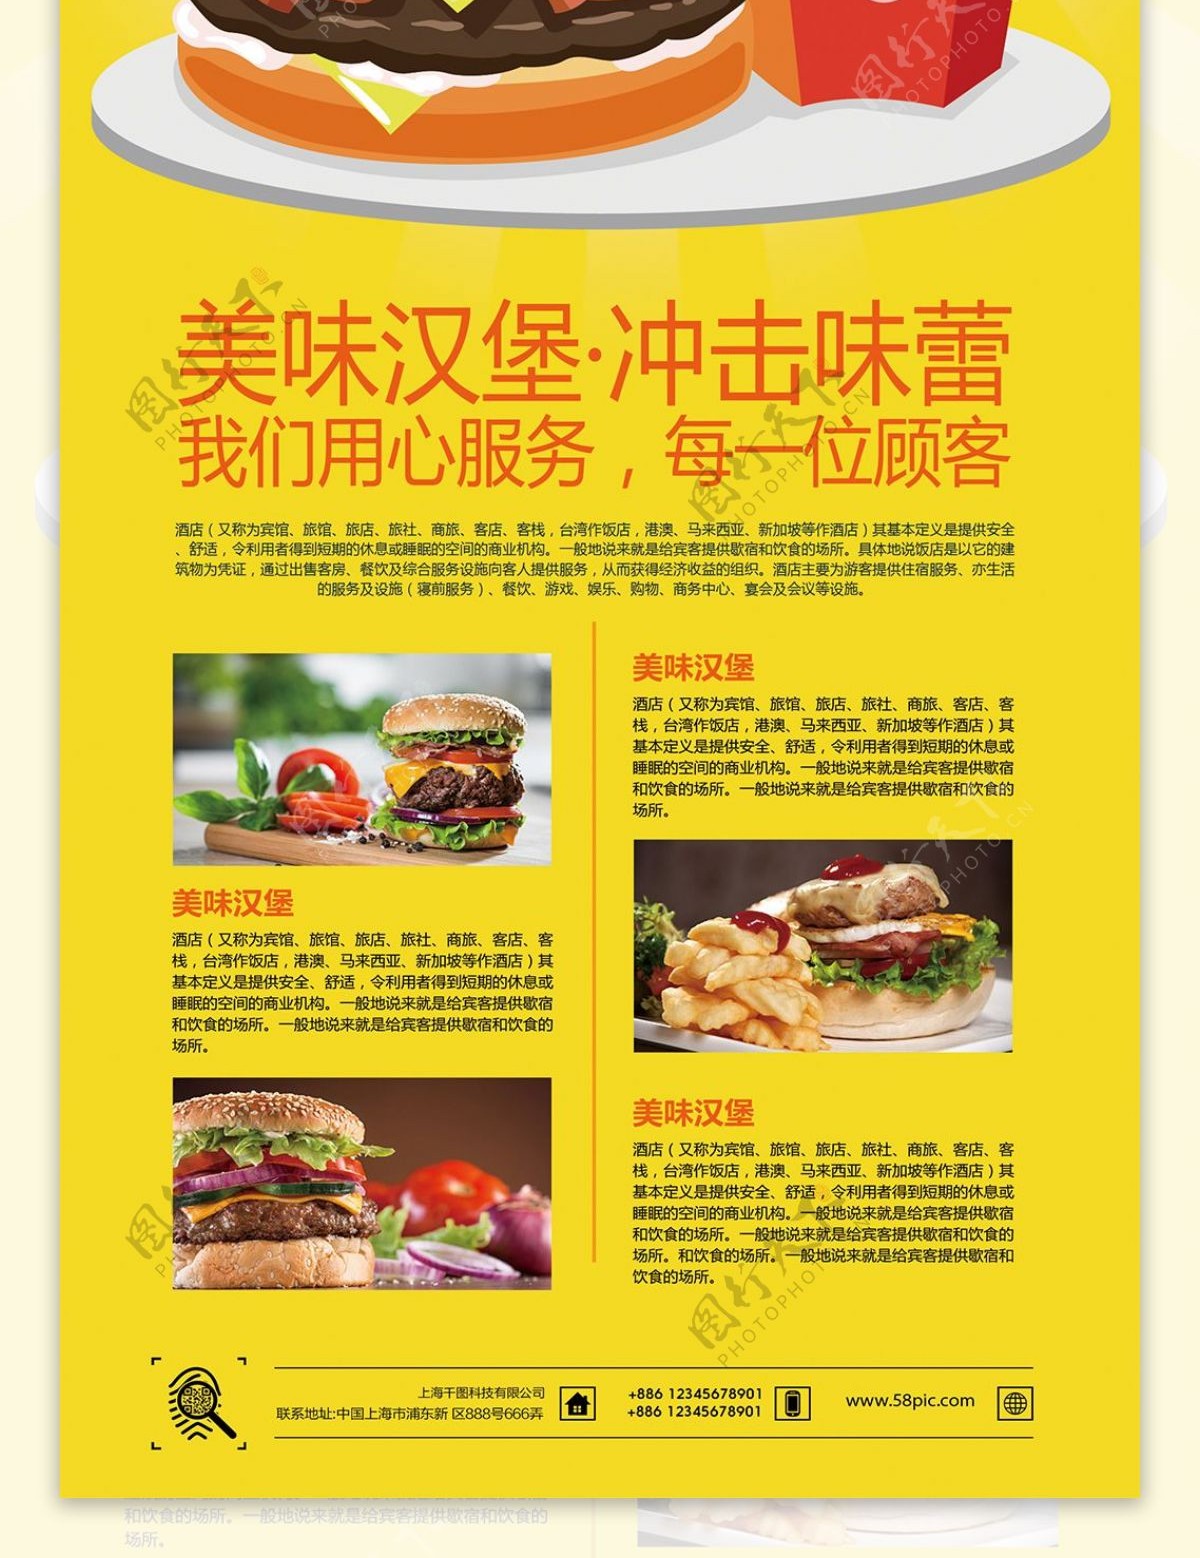 简约风创意字体设计快餐美食汉堡展架